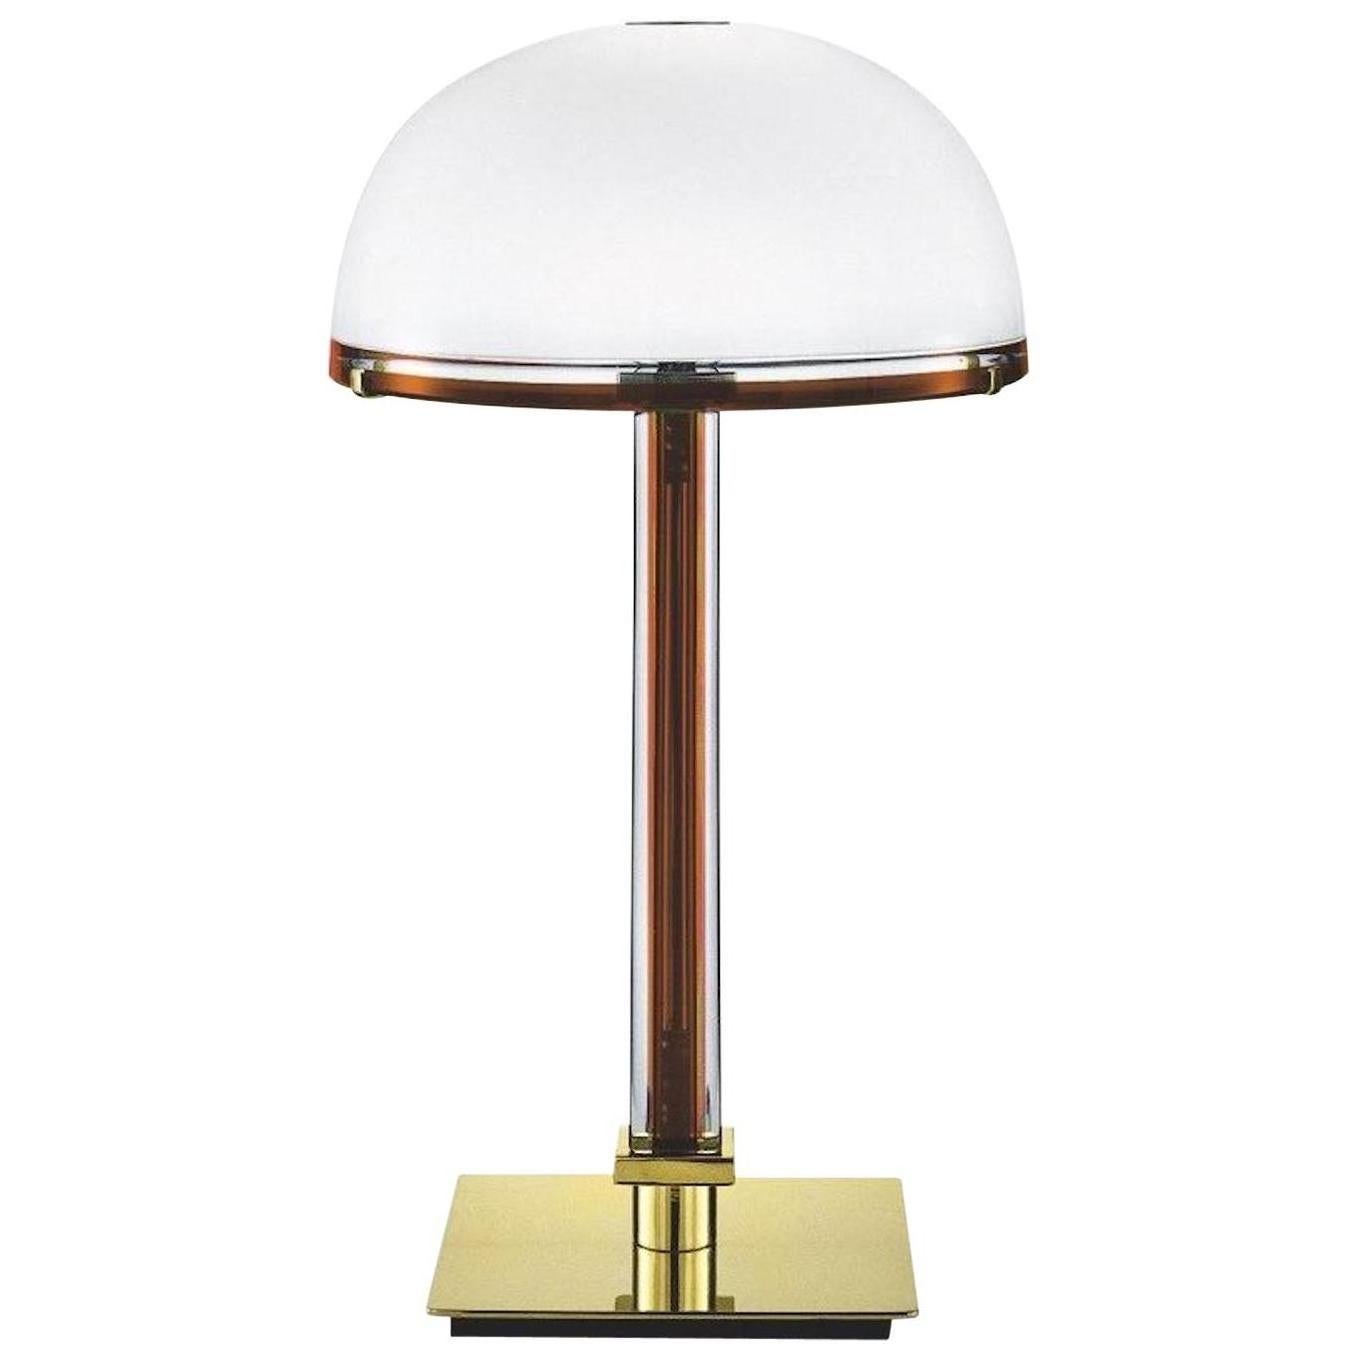 La lampe de table Belboi Tavolo, conçue et fabriquée par Venini, présente un plateau en verre soufflé à la main et des finitions en métal plaqué or. Ajoute une touche de couleur à n'importe quel bureau ou table. Source lumineuse : Un max 150 W E14